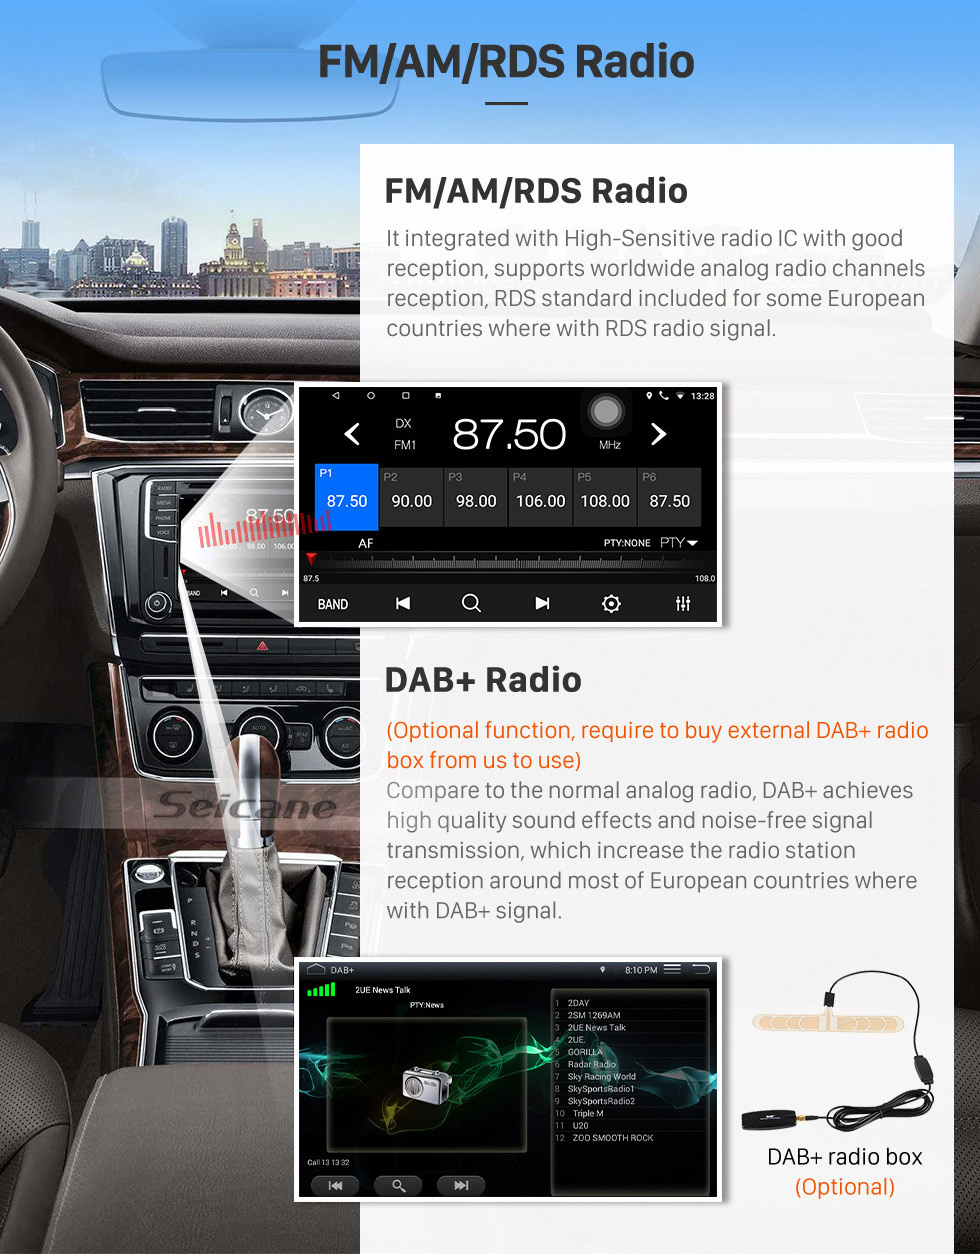 Seicane OEM 9-дюймовый Android 10.0 для 2001-2005 Honda Civic RHD Руководство A / C Радио с Bluetooth HD с сенсорным экраном Поддержка GPS-навигатора Carplay DAB +